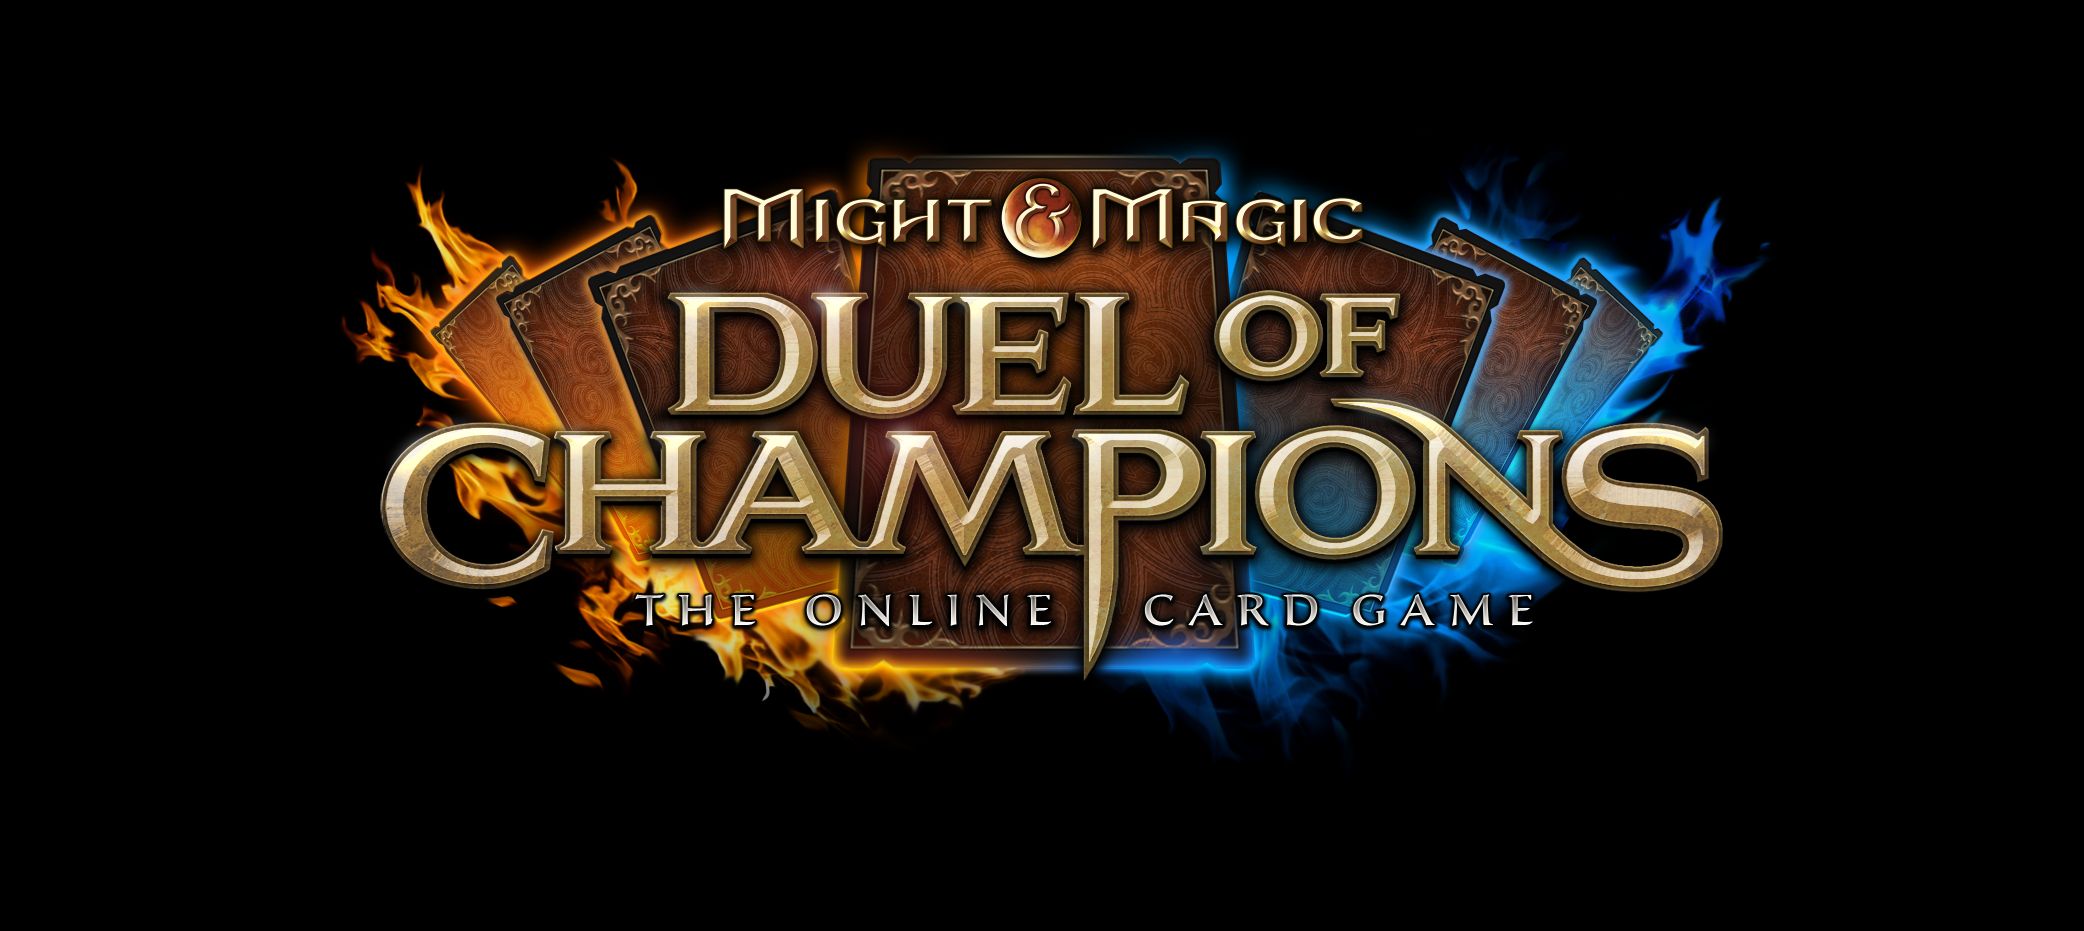 Might & Magic Duel of Champions – Herz der Alpträume veröffentlicht